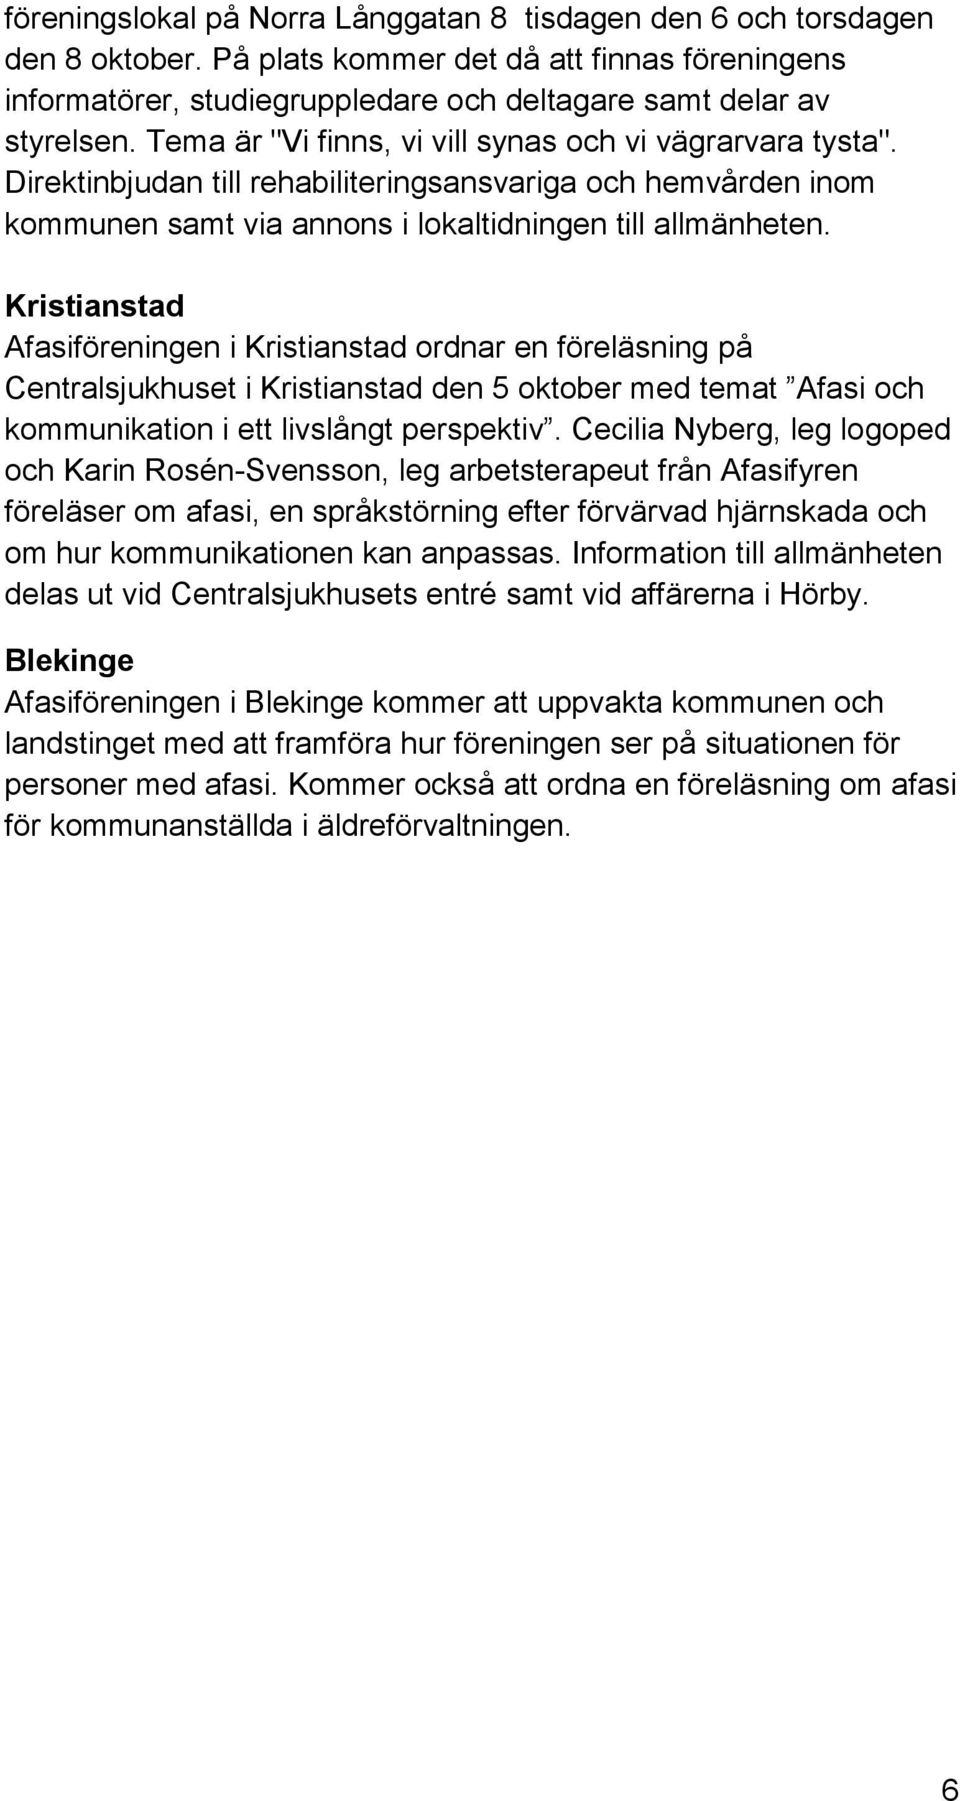 Kristianstad Afasiföreningen i Kristianstad ordnar en föreläsning på Centralsjukhuset i Kristianstad den 5 oktober med temat Afasi och kommunikation i ett livslångt perspektiv.